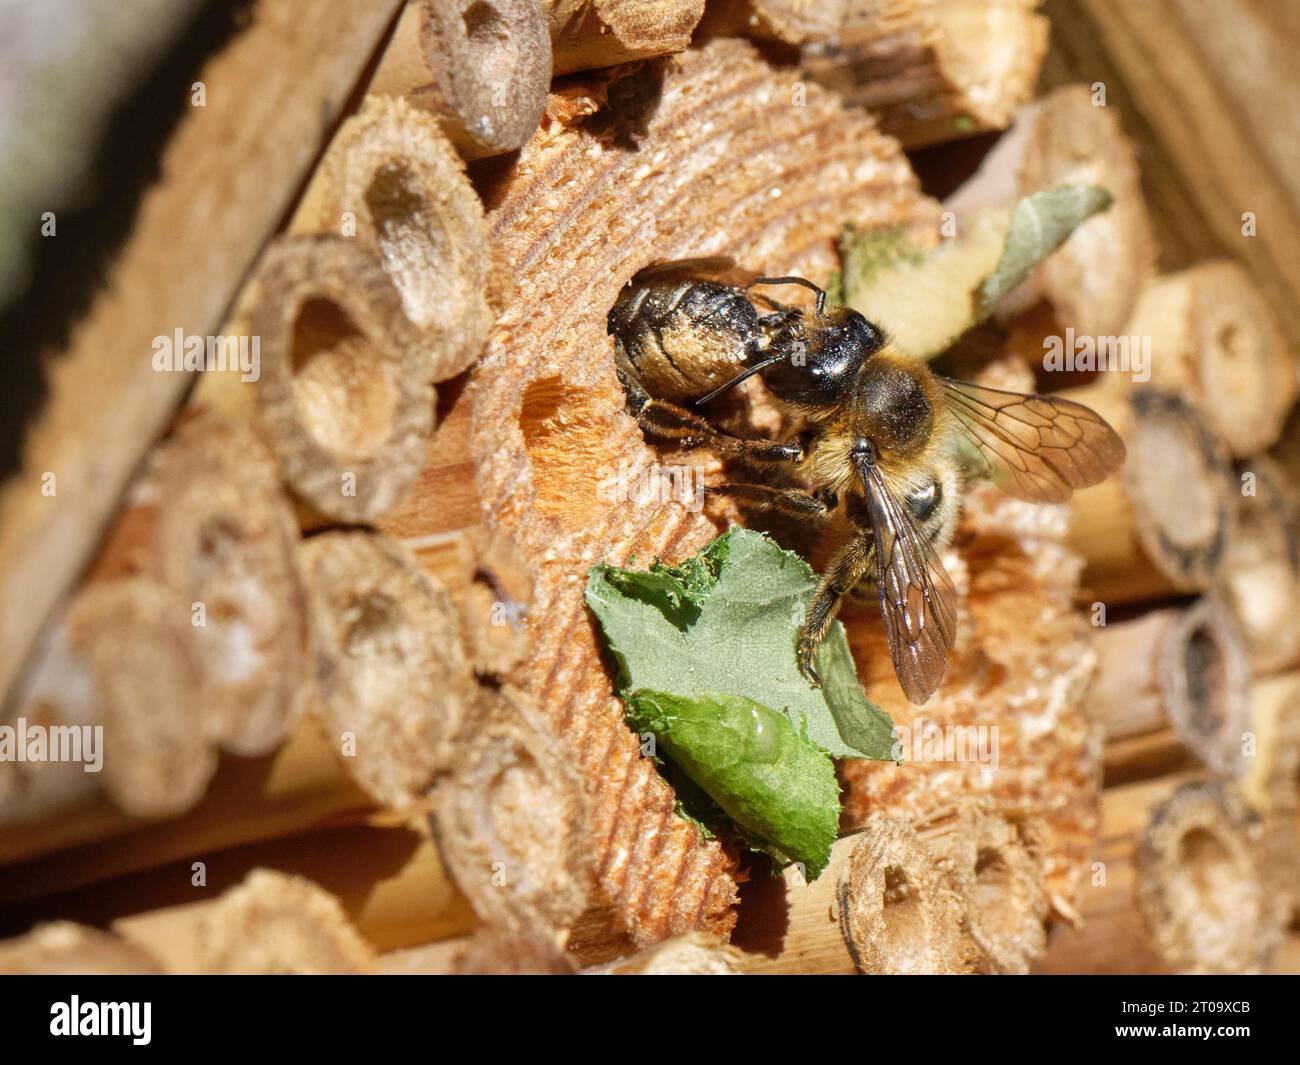 Une abeille tailleuse de feuilles (Megachile ligniseca) femelle attaquant une autre avec laquelle elle est en compétition pour un terrier de nid dans un hôtel à insectes, au Royaume-Uni. Banque D'Images